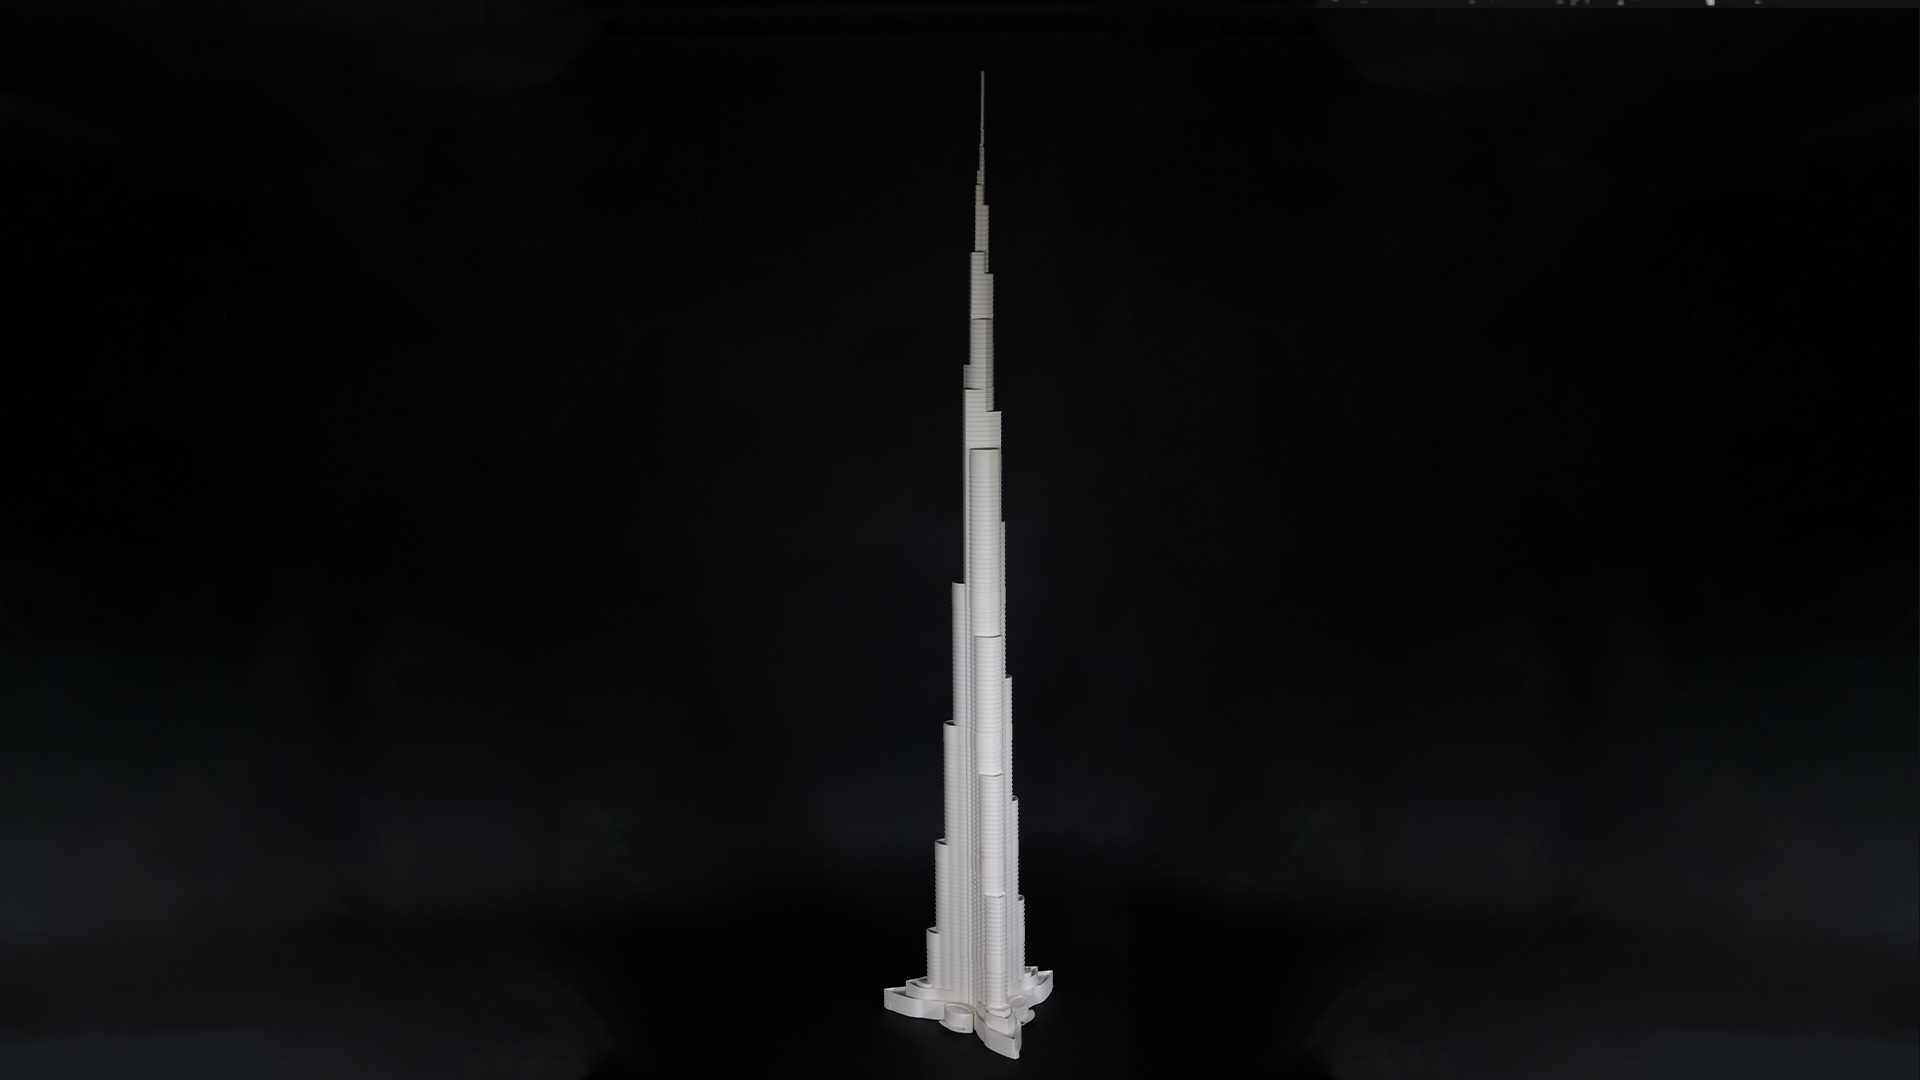 Macheta Cadou -Burj Khalifa